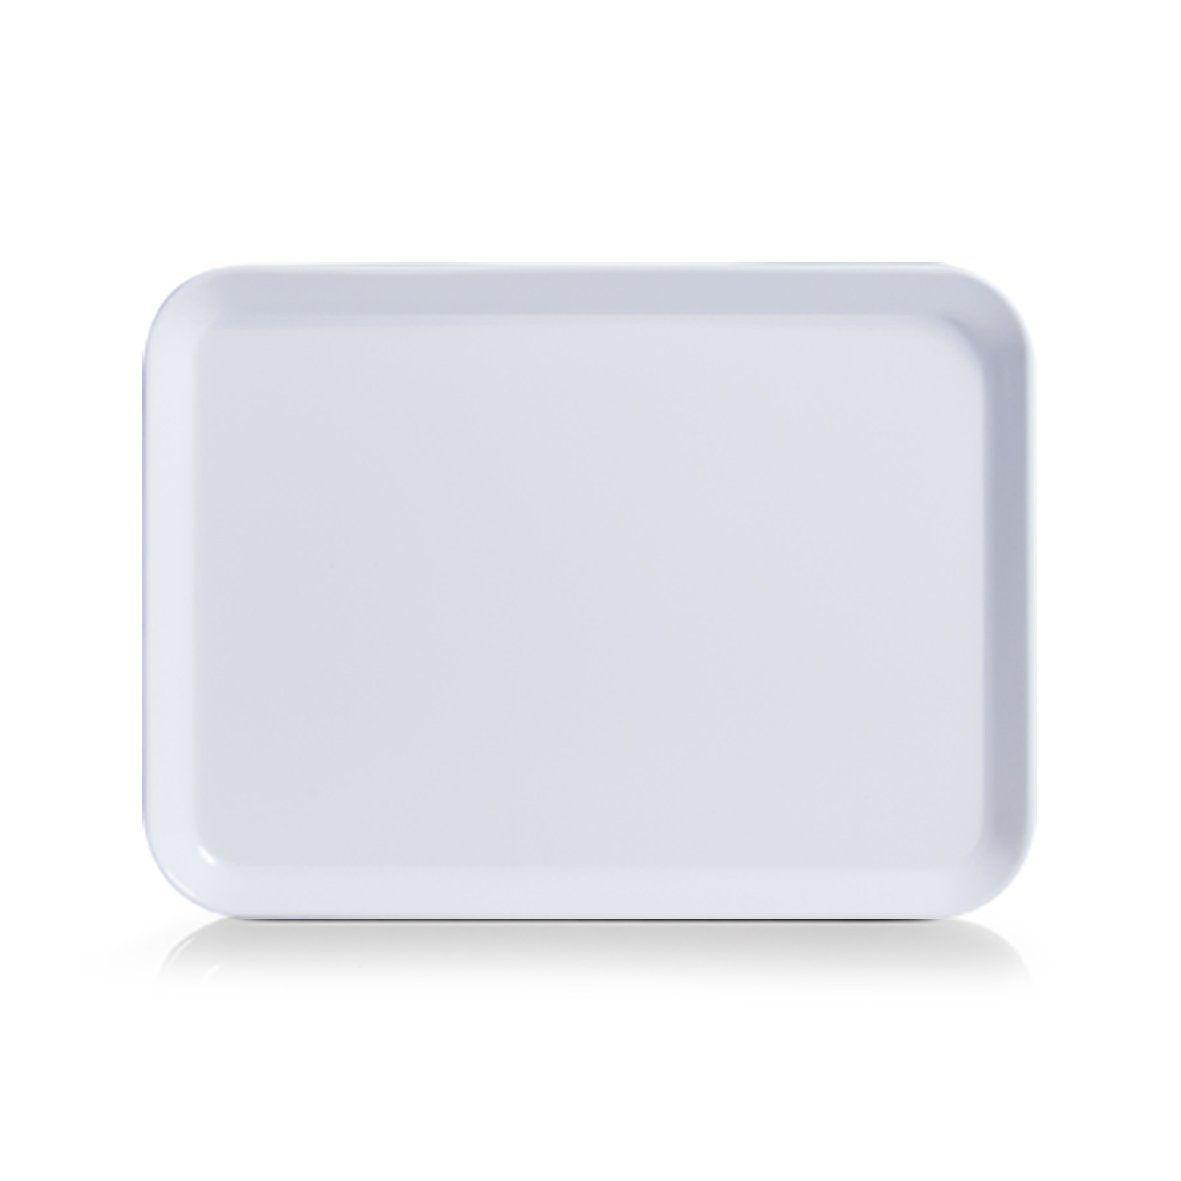 Zeller Present Küchenorganizer-Set Melamintablett, weiß, 24 x 18 cm